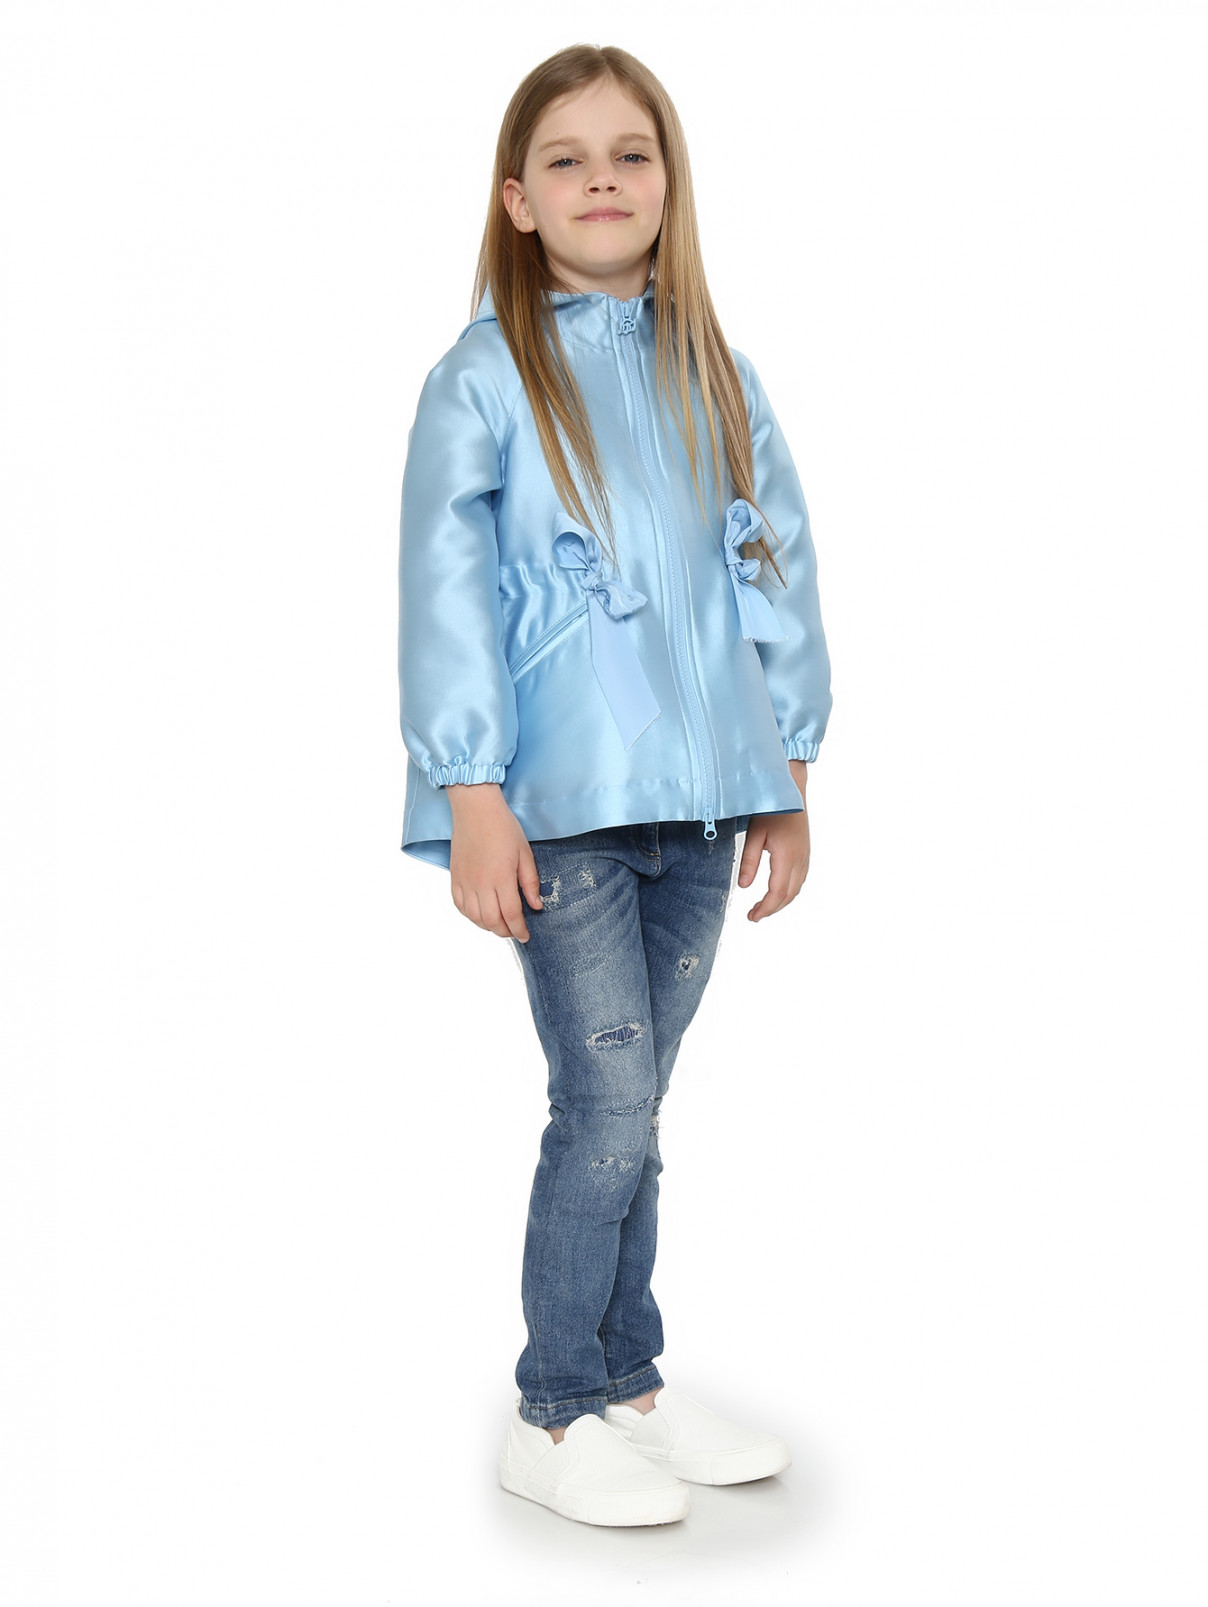 Легкая куртка на молнии с двумя боковыми карманами MiMiSol  –  Модель Общий вид  – Цвет:  Синий